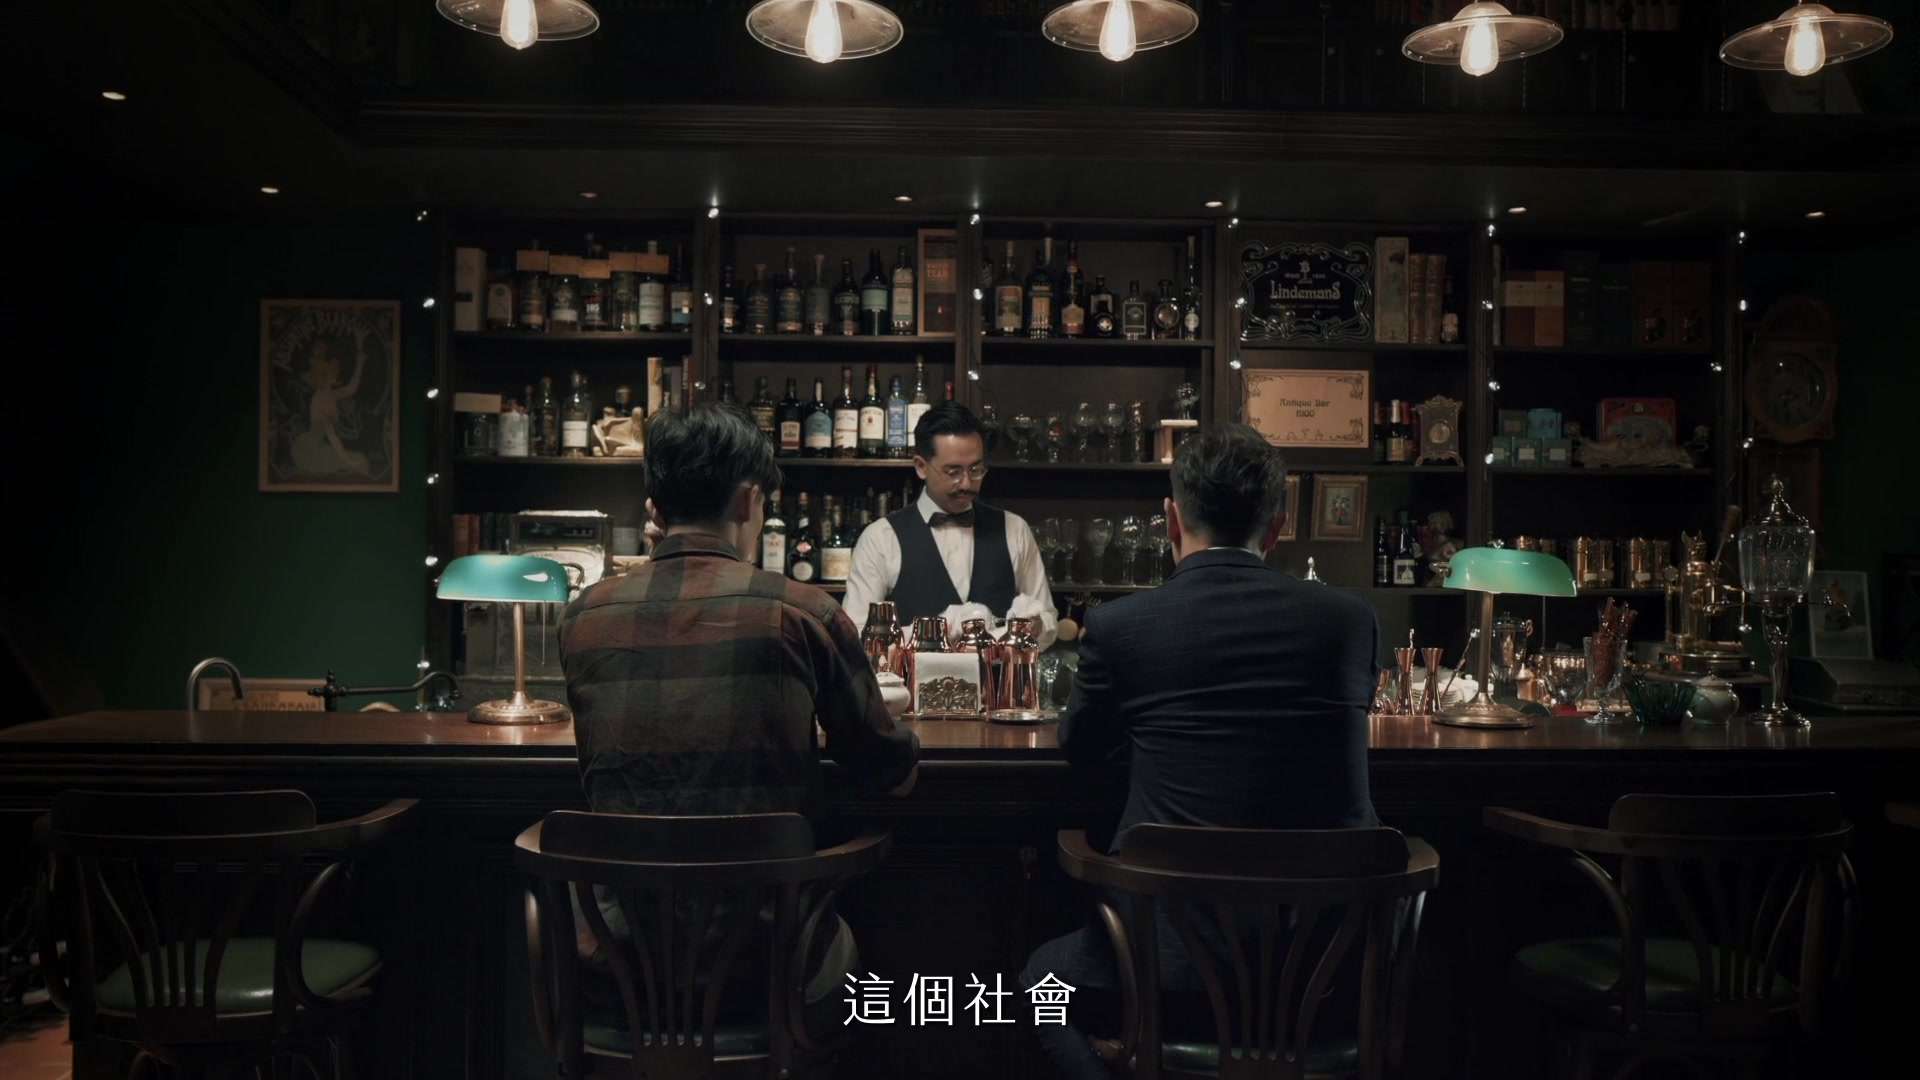 谢祖武 - 黎明启示录 [Commercial]